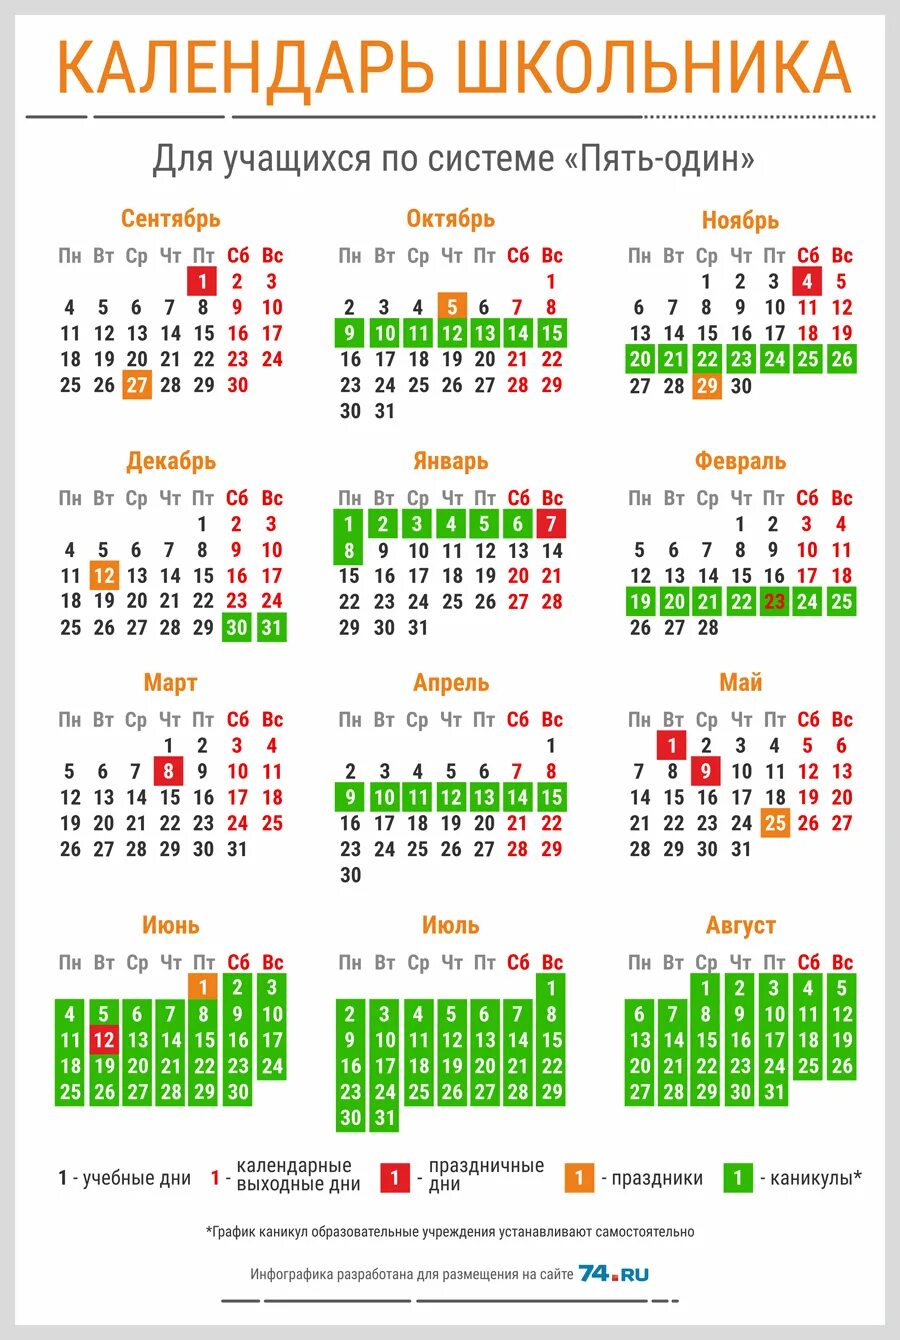 Какие праздники в 4 четверти. Календарь школьника. Выходные в мое в школах. Календарь каникул. Календарь школьных праздников.